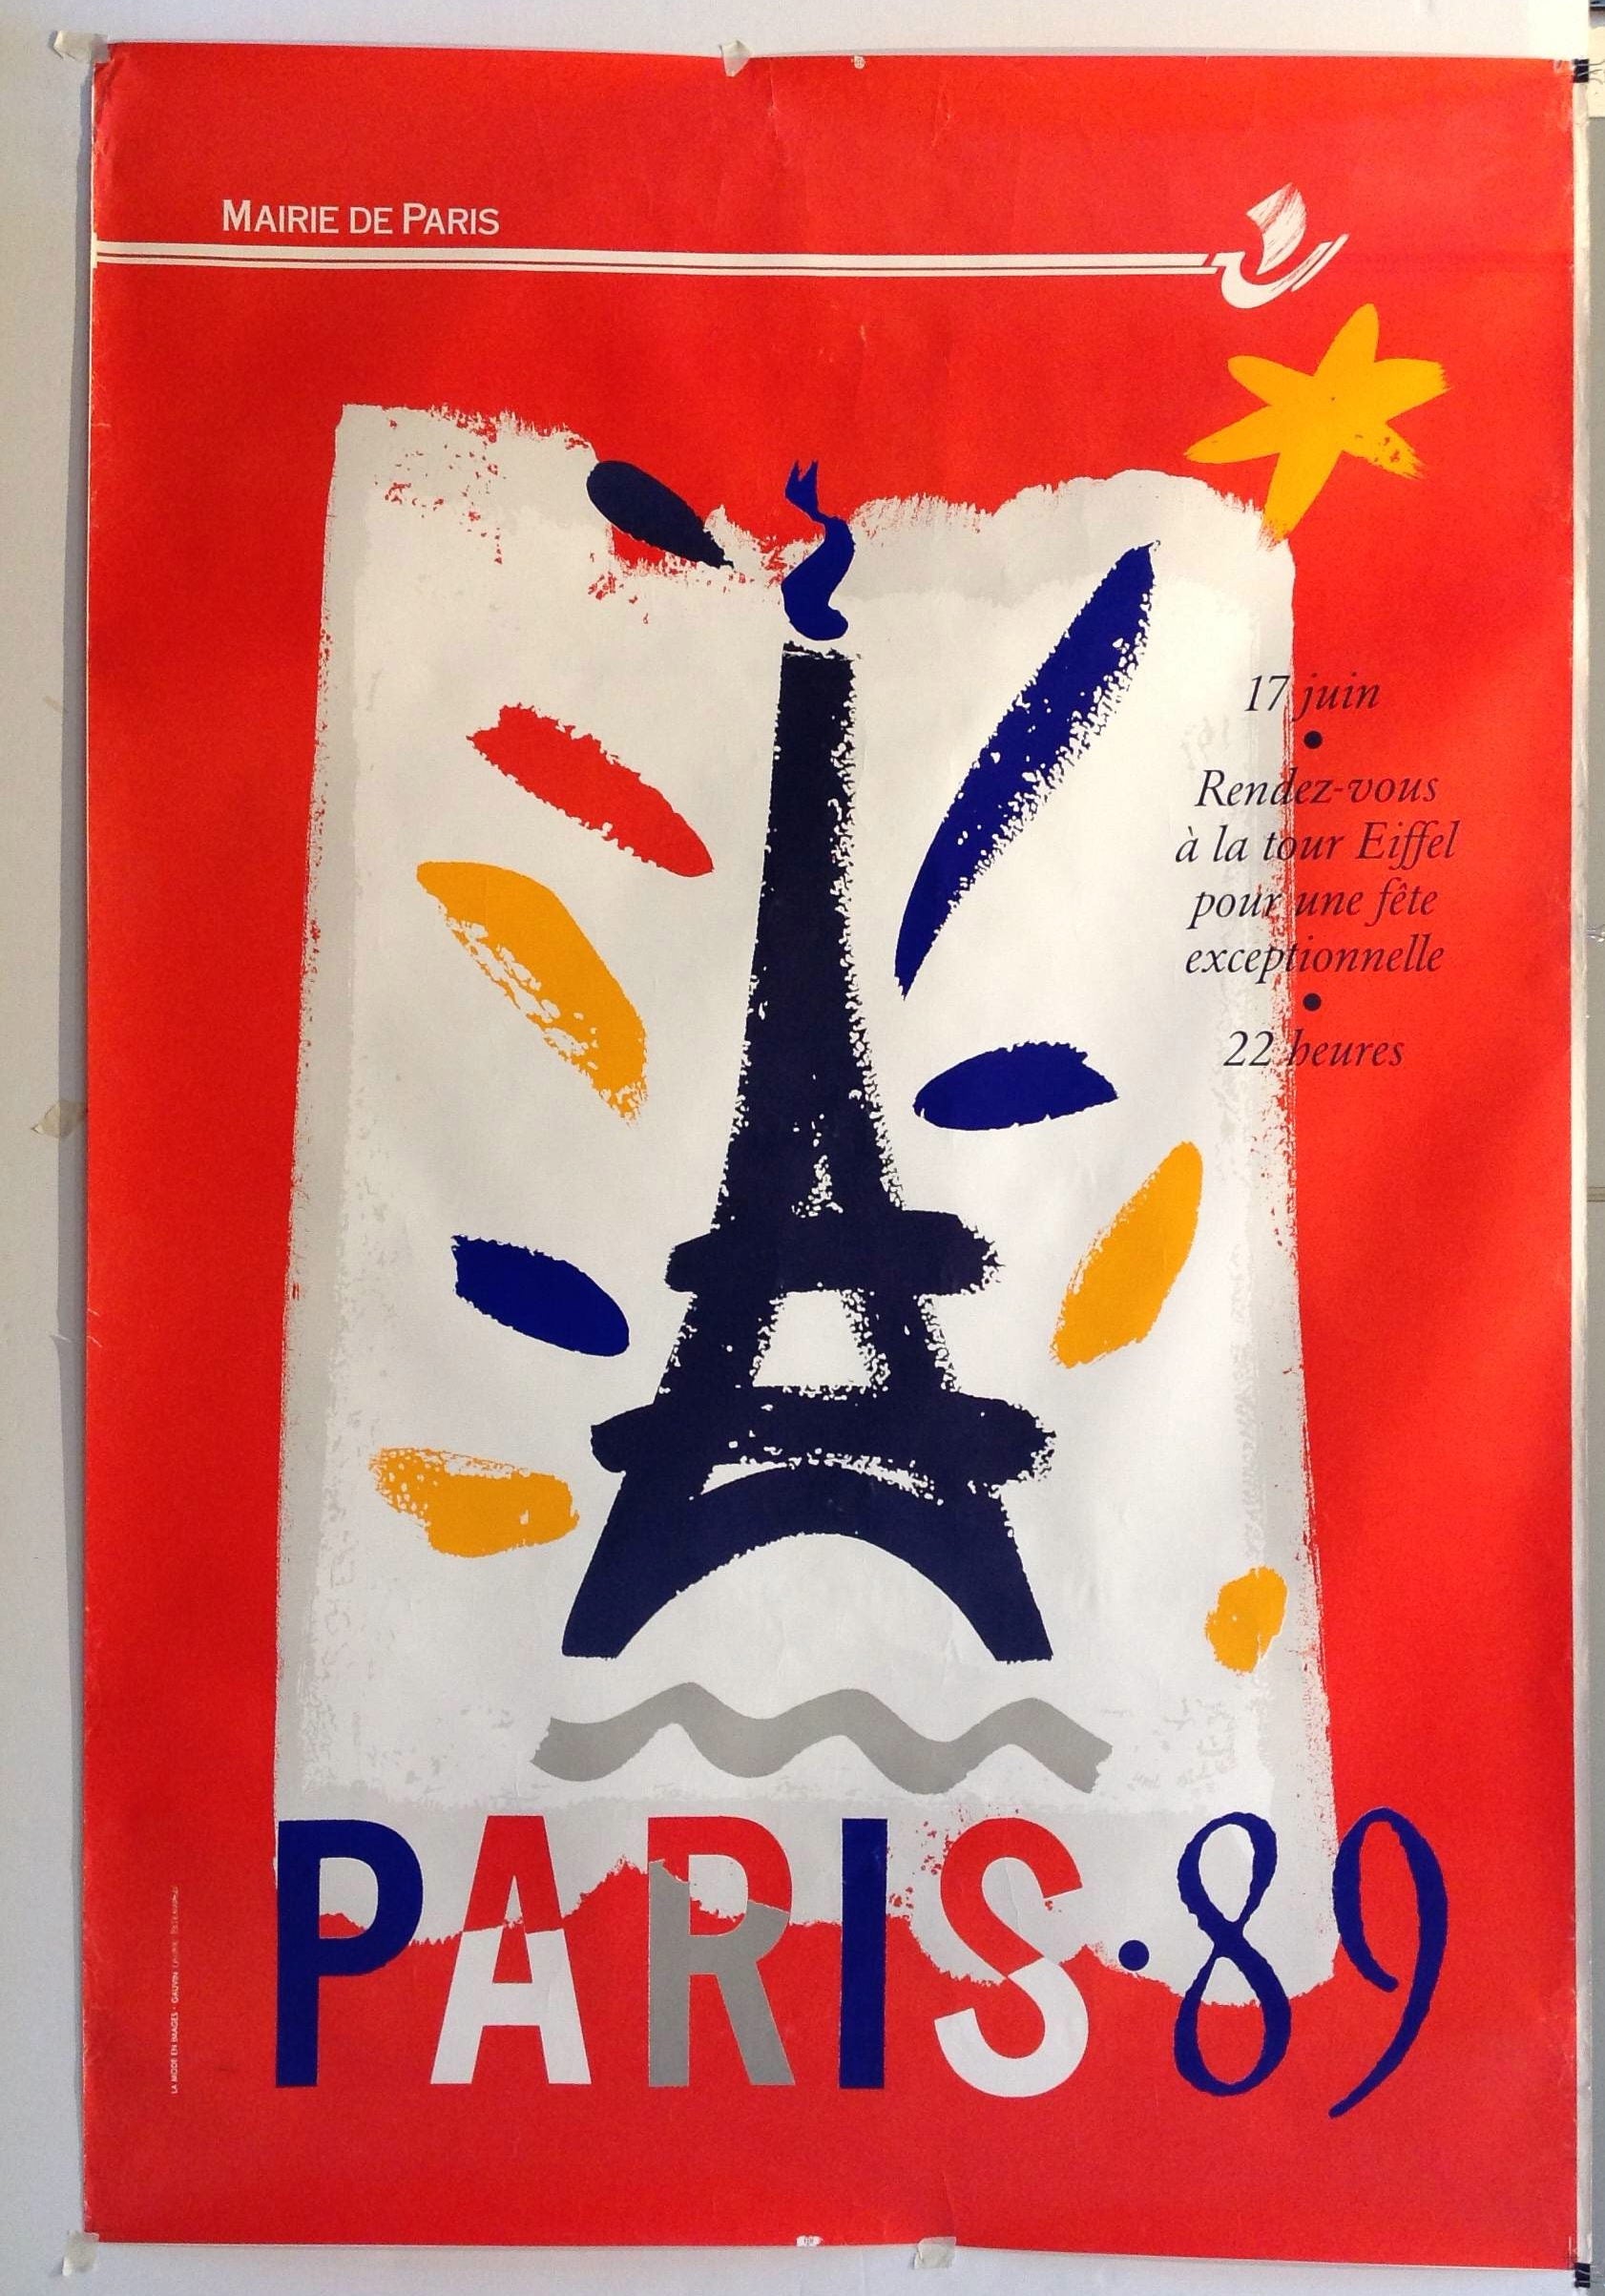 Paris - 89